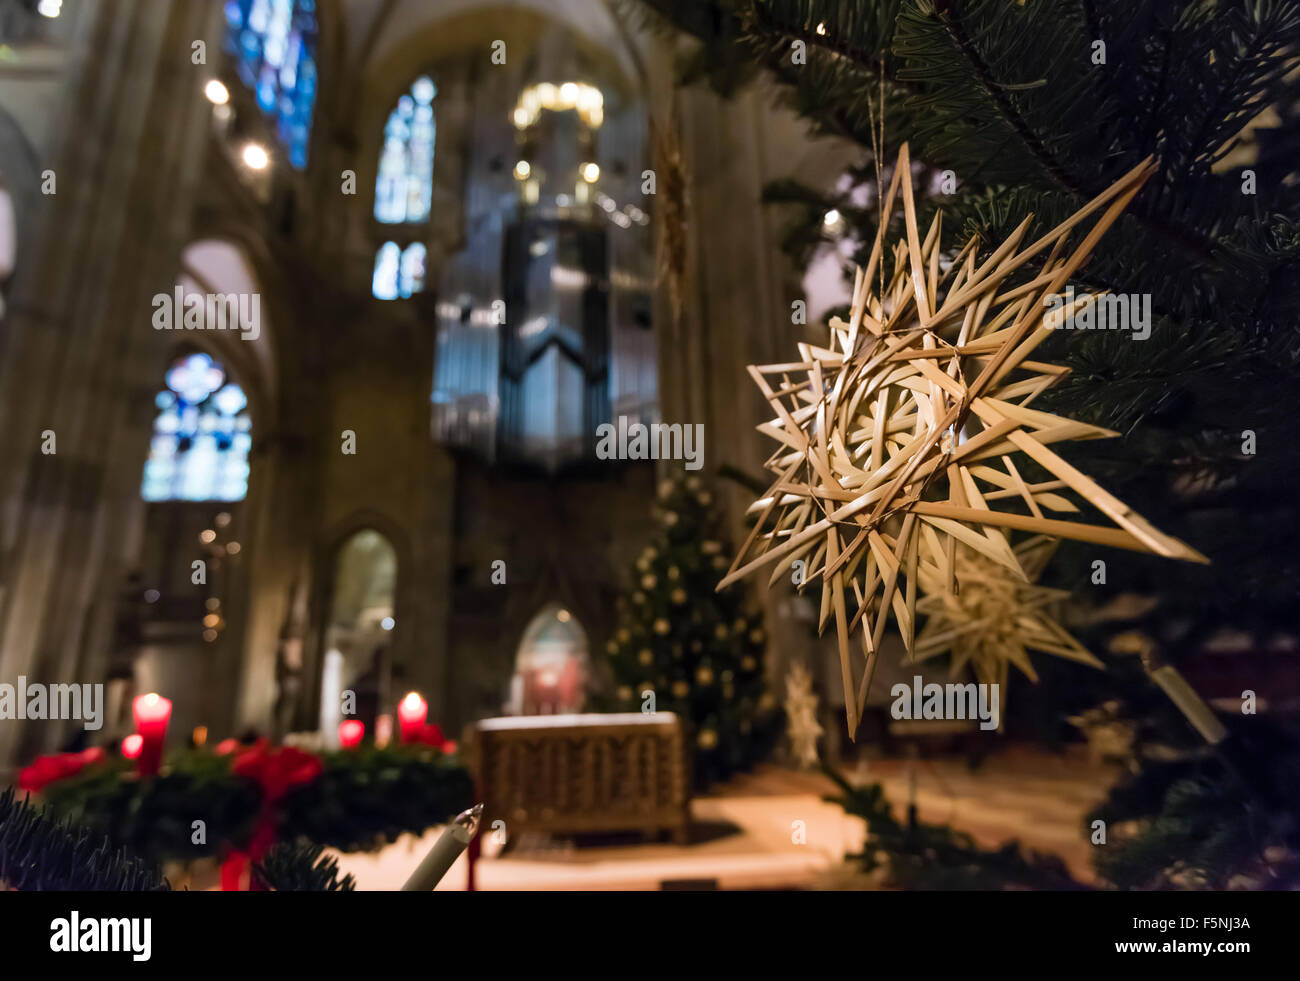 Décoration de Noël à l'intérieur de la cathédrale de Regensburg (Dom) de Saint Pierre, de style gothique monument de Regensburg, Allemagne (Bavière). Banque D'Images